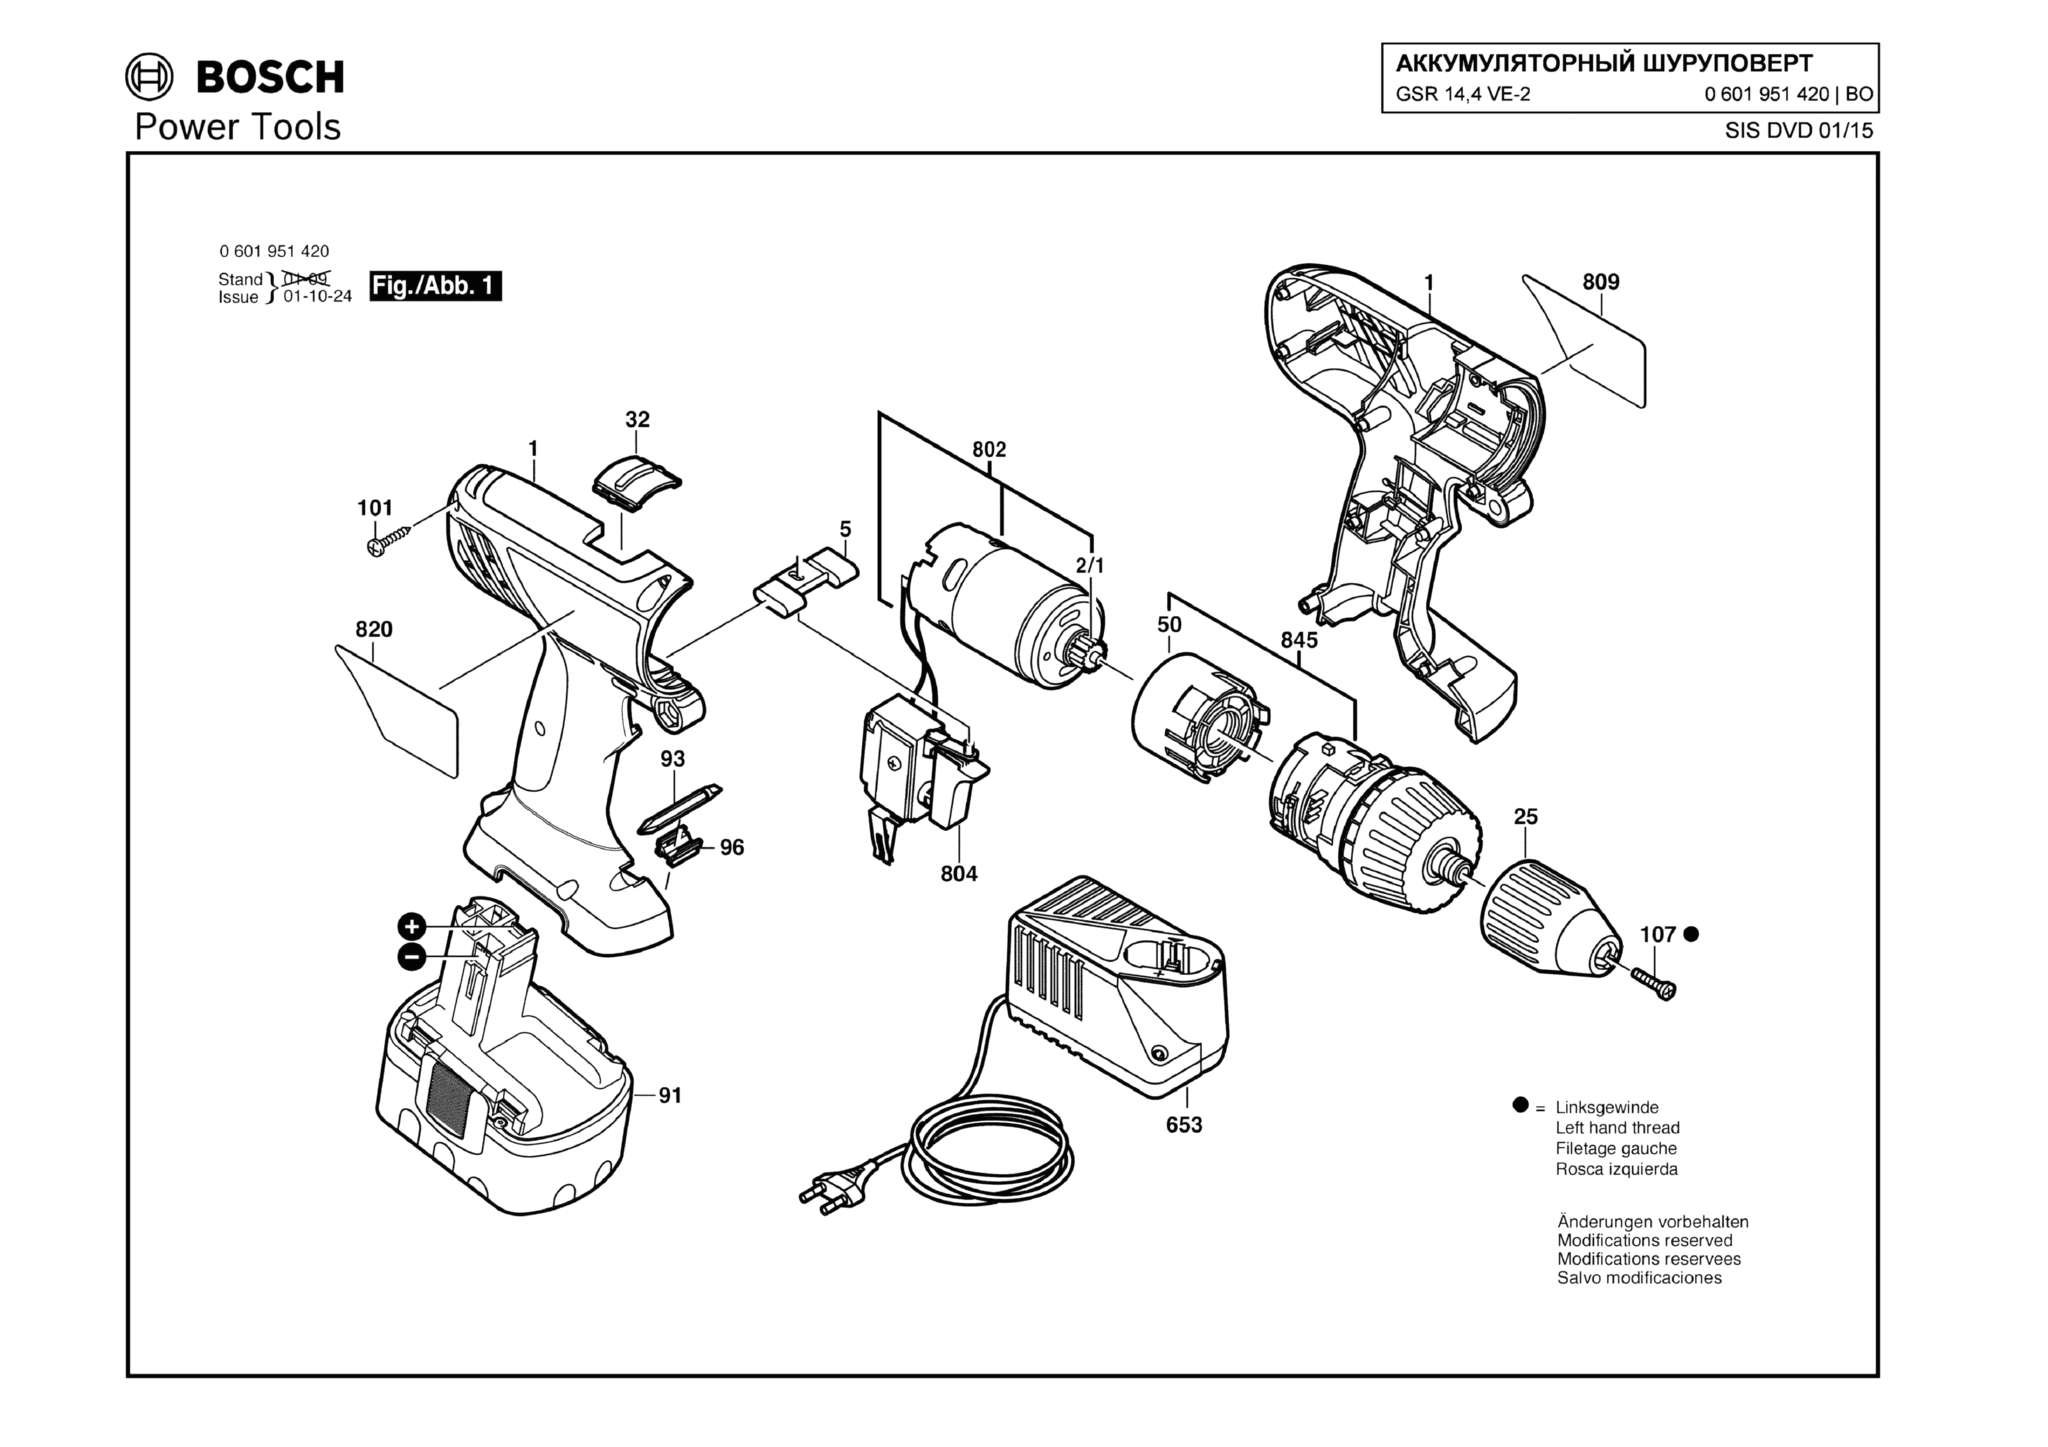 Запчасти, схема и деталировка Bosch GSR 14,4 VE-2 (ТИП 0601951420)